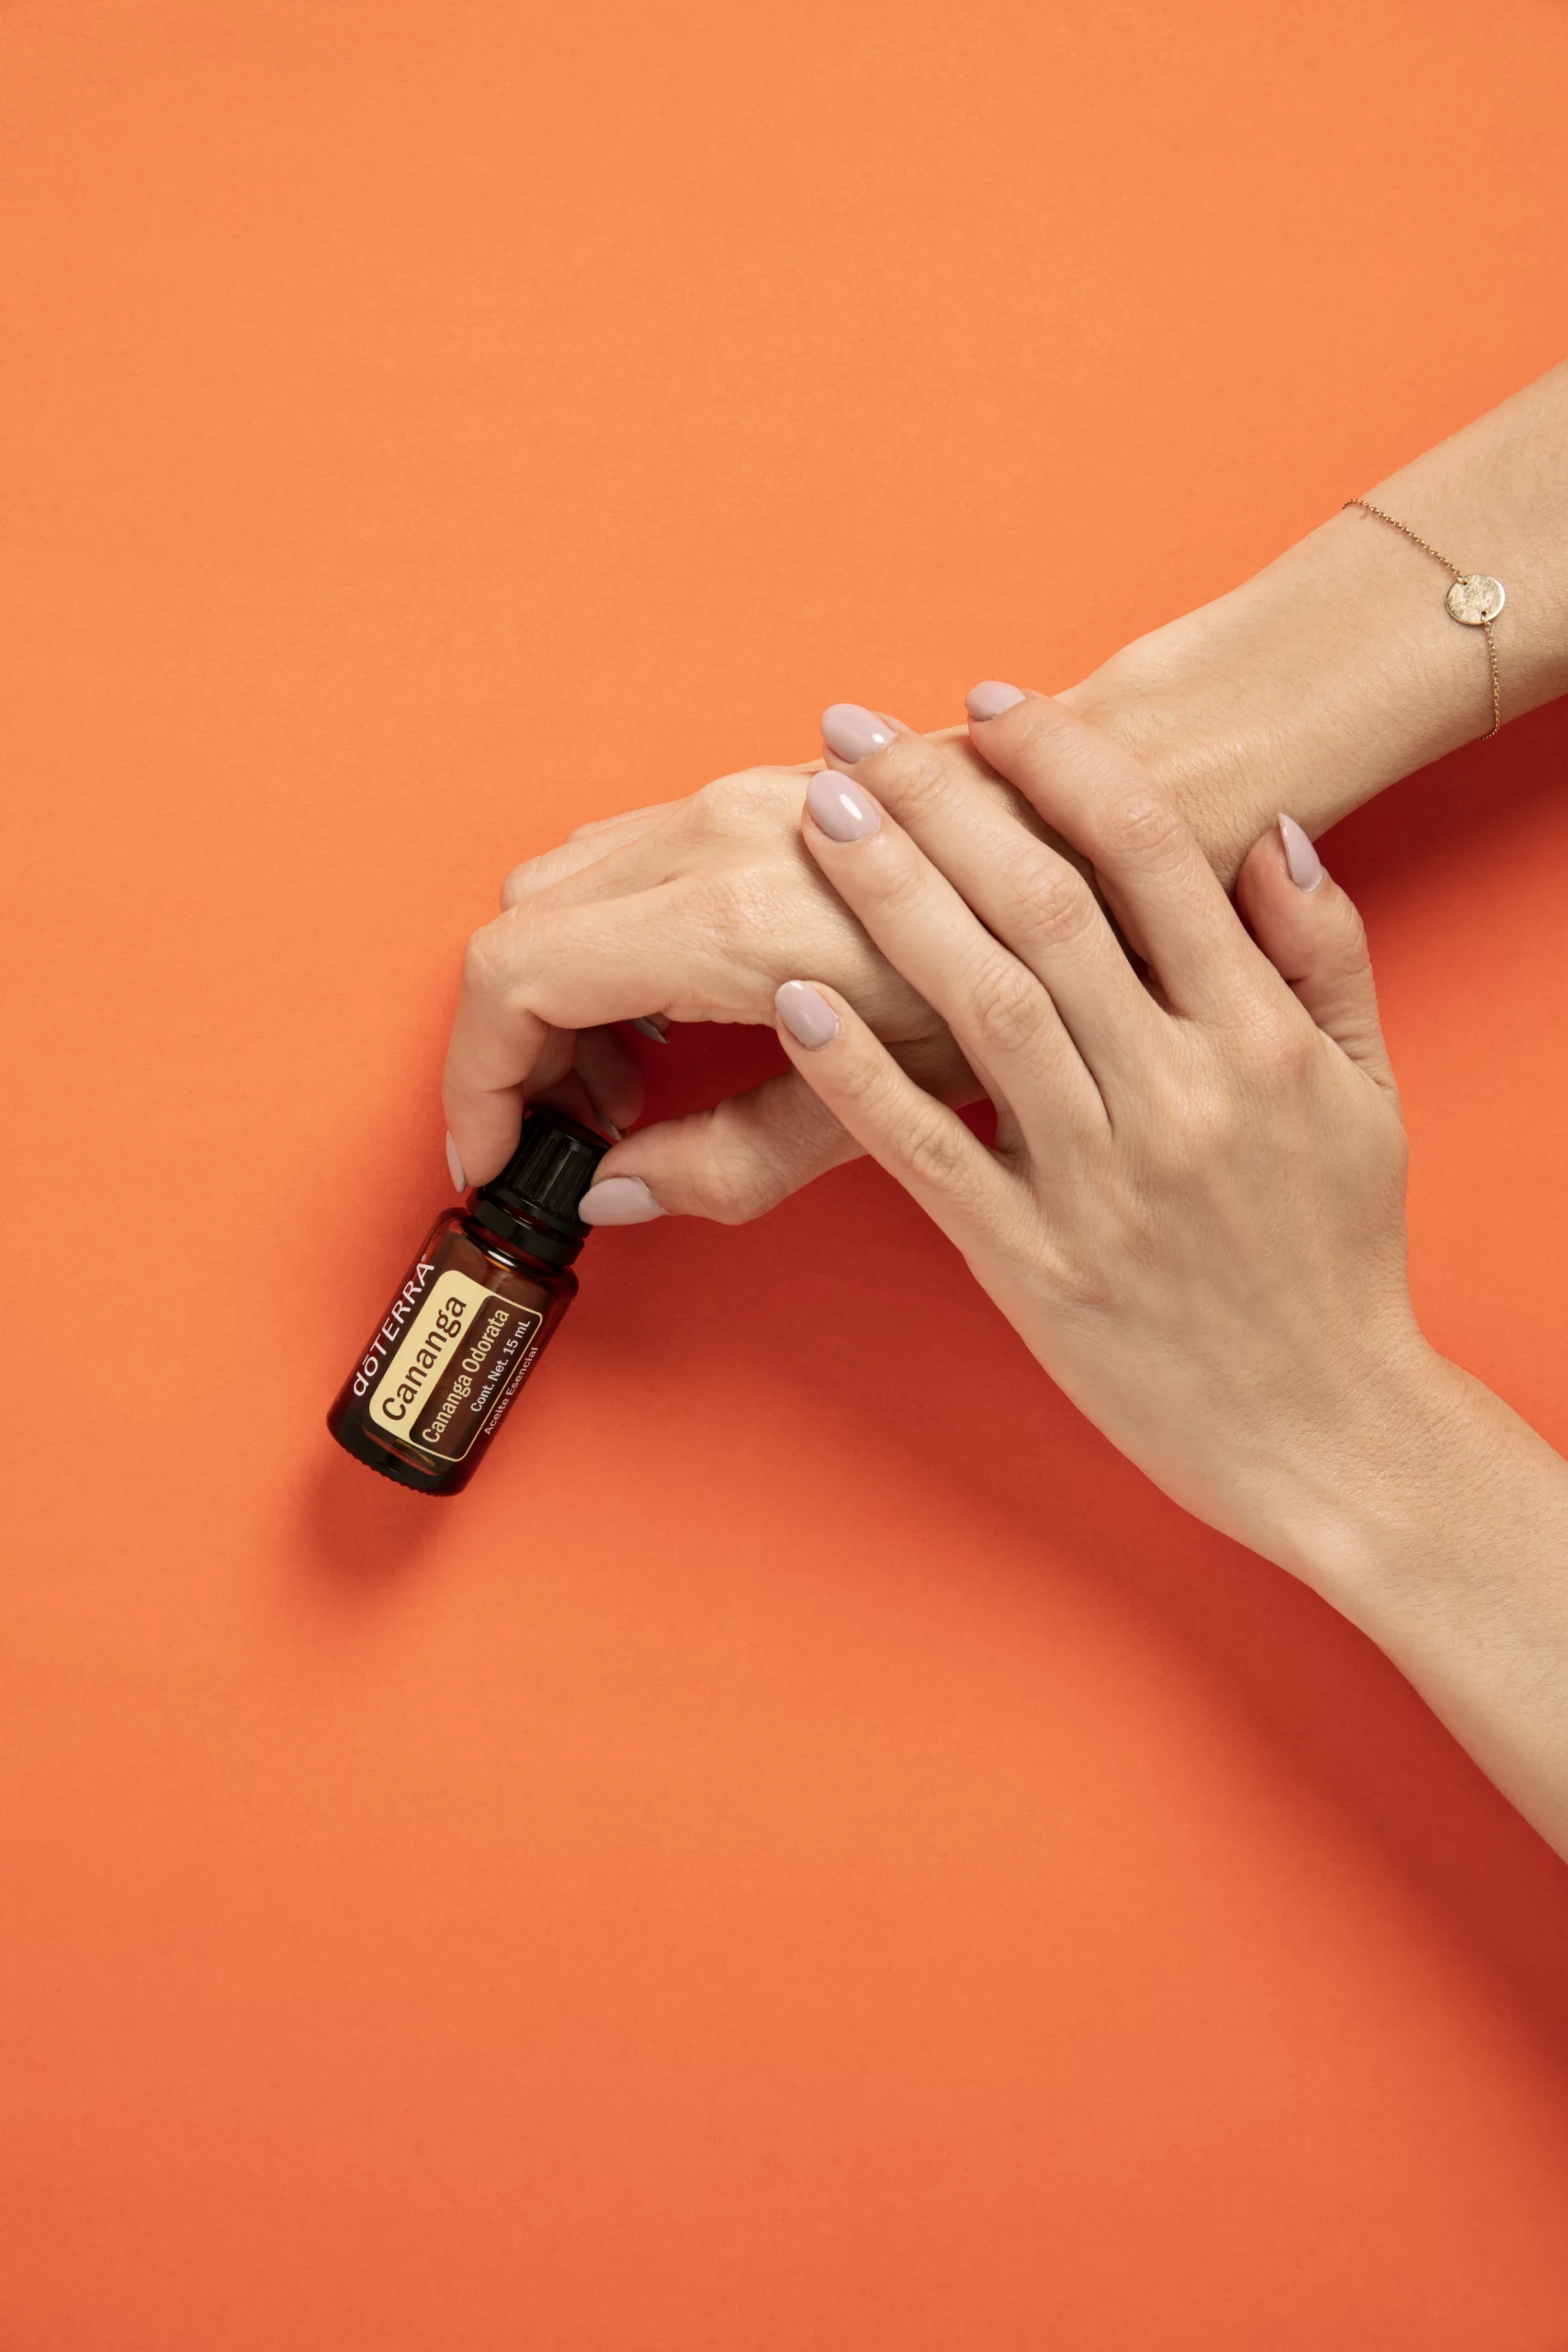 Applying Essential Oils on Skin